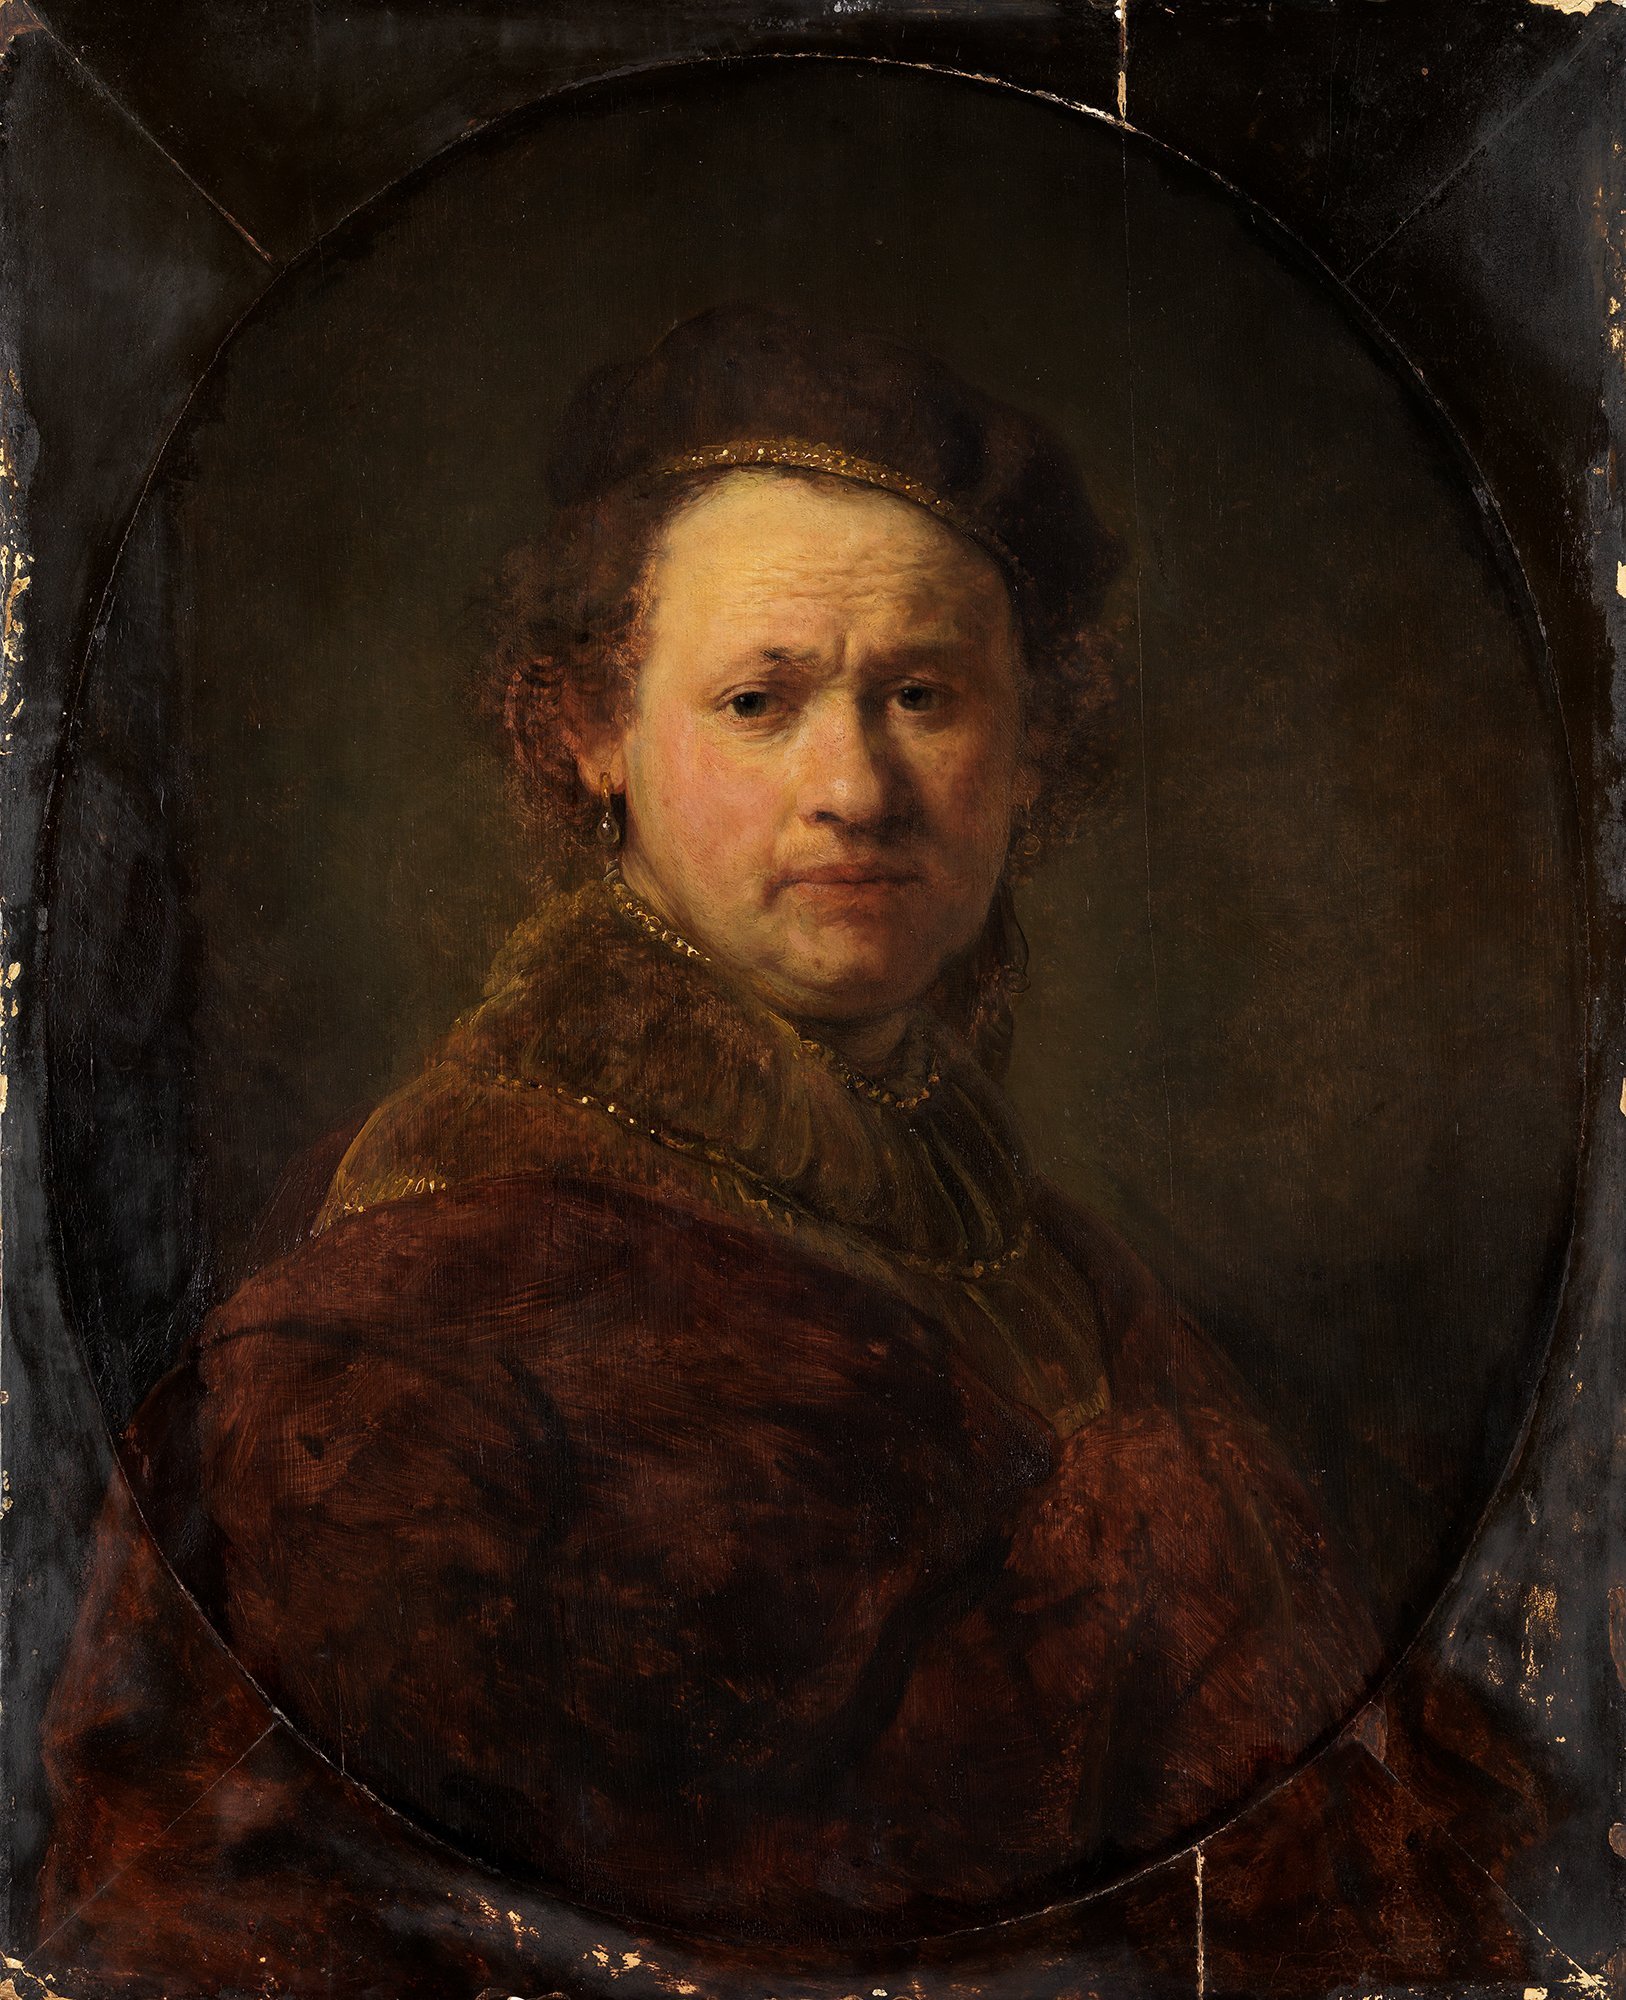 Abbildung des Selbstbildnisses von Rembrandt aus dem Jahr 1650. Er trägt ein braunes Gewand und einen braunen Hut.